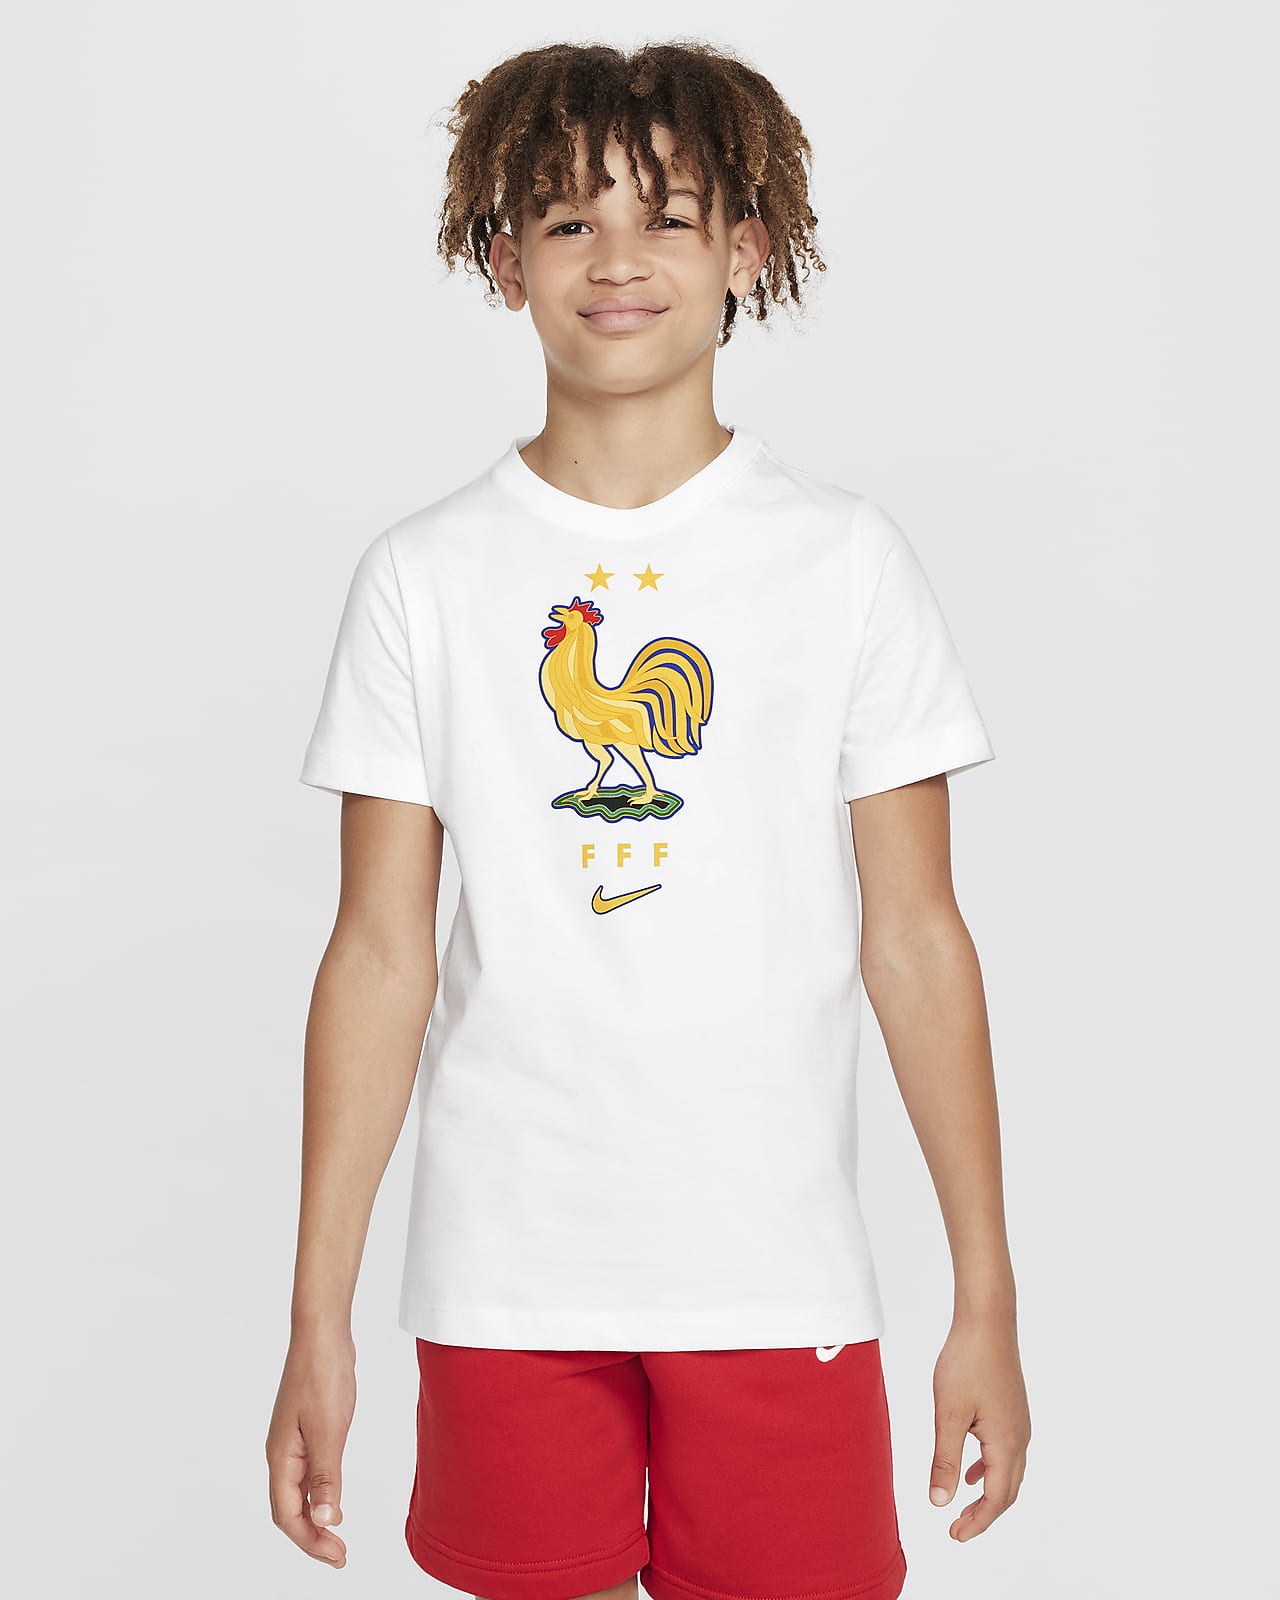 Tričko Nike Football FFF pro větší děti